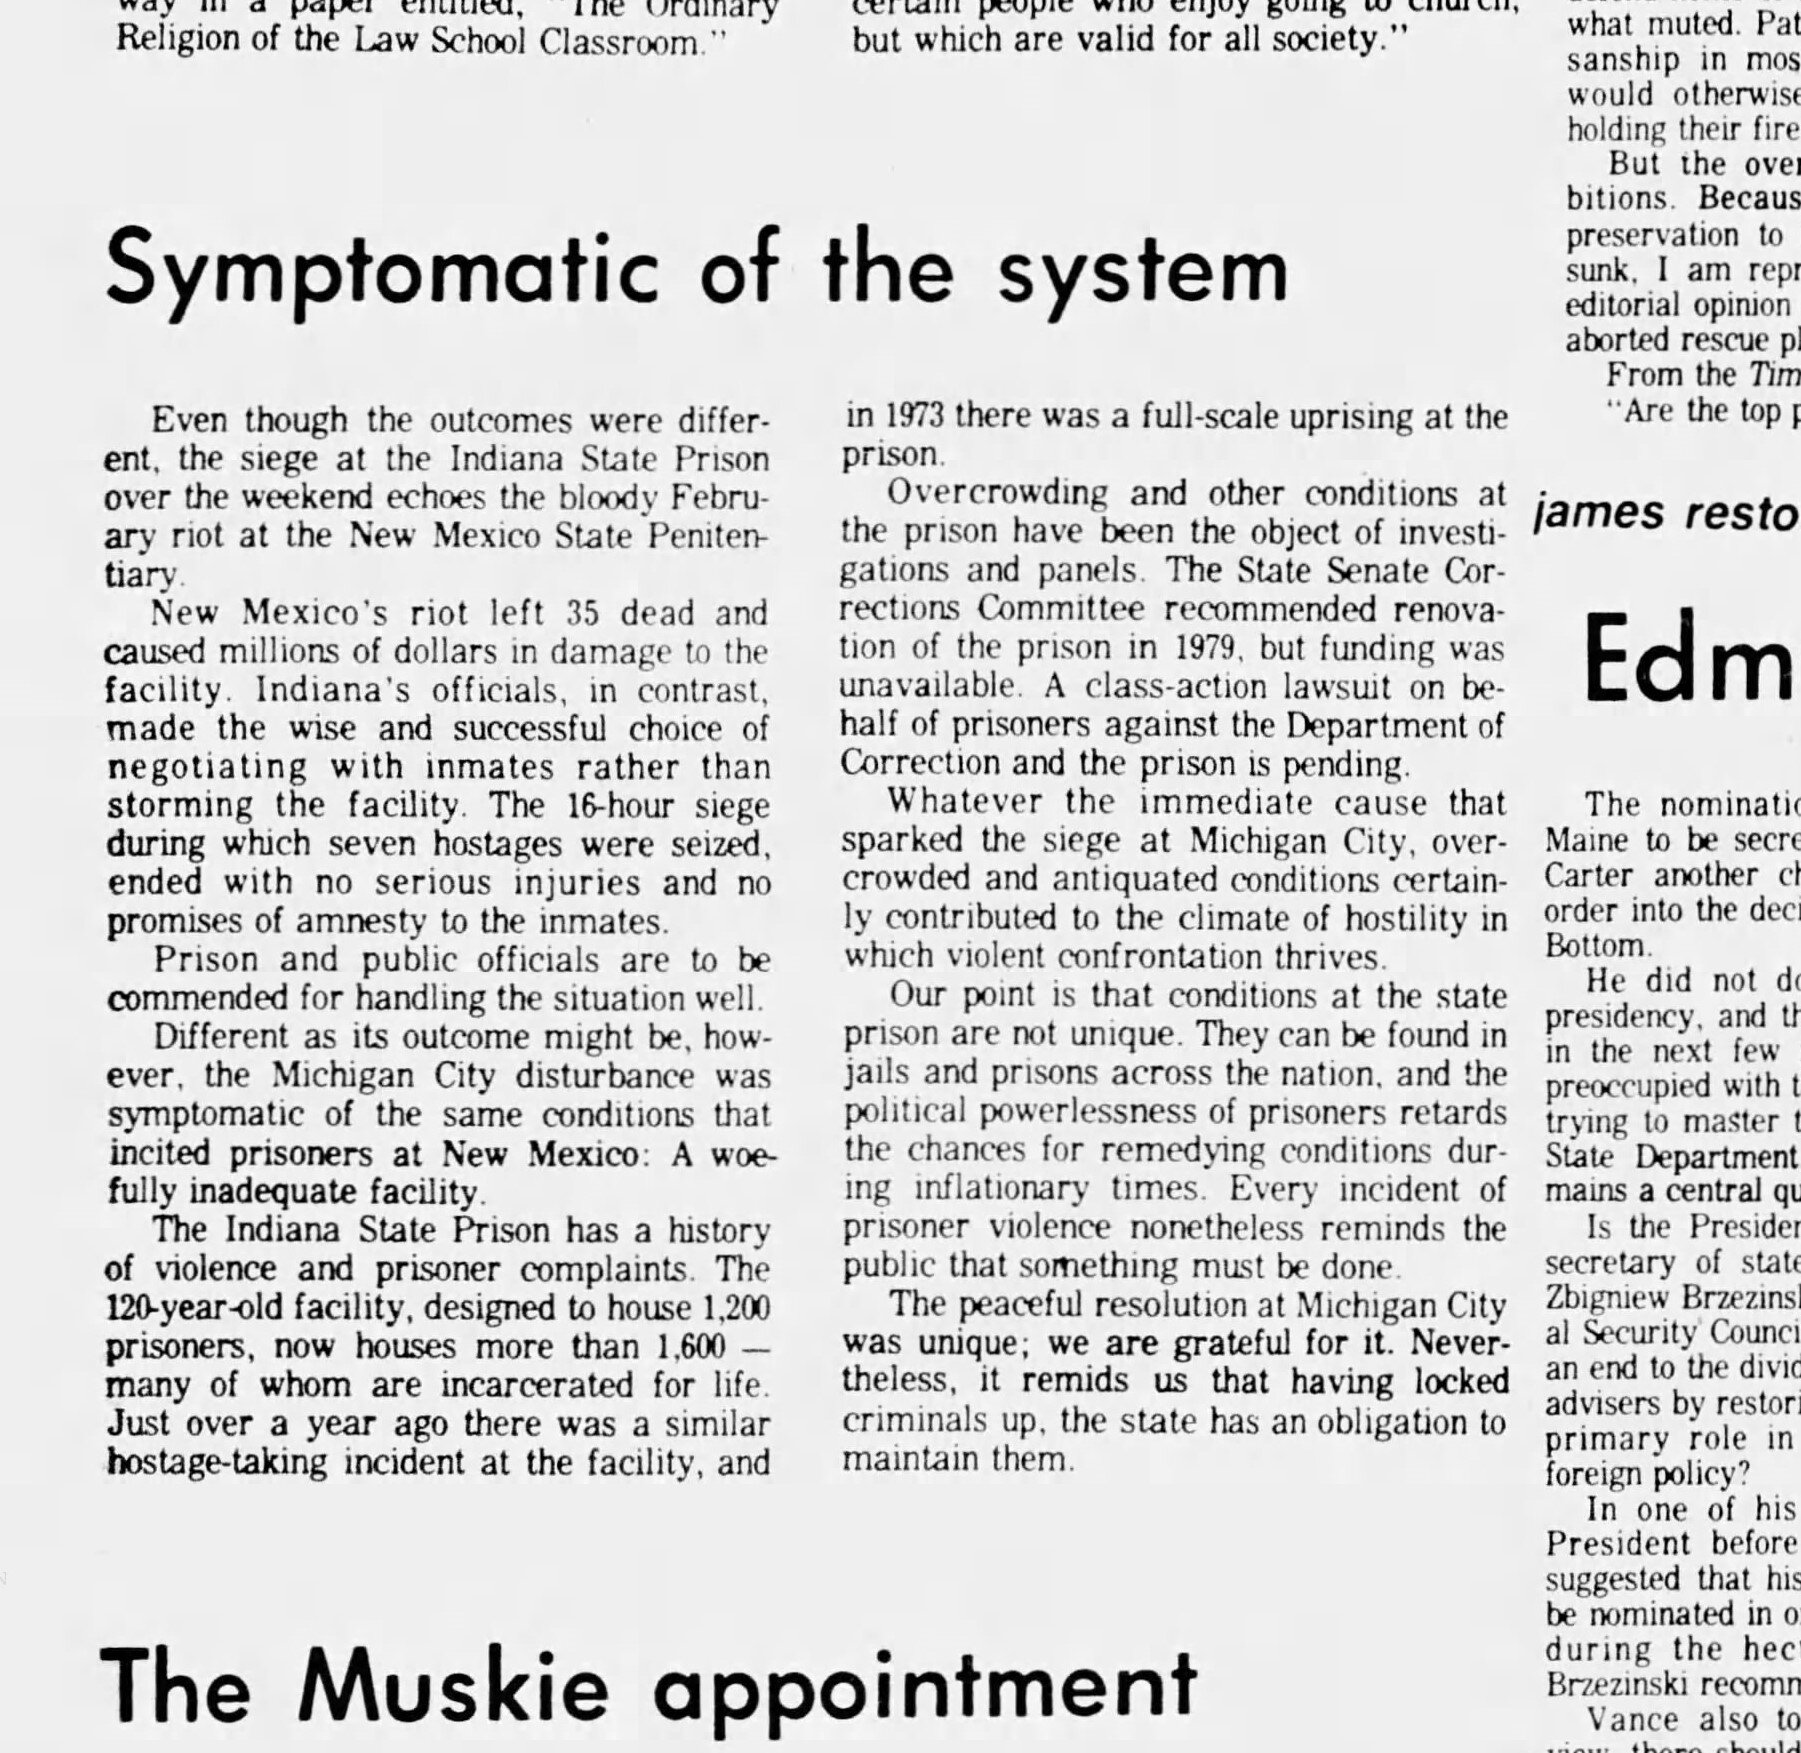 The_Indianapolis_News_Thu__May_1__1980_1.jpg